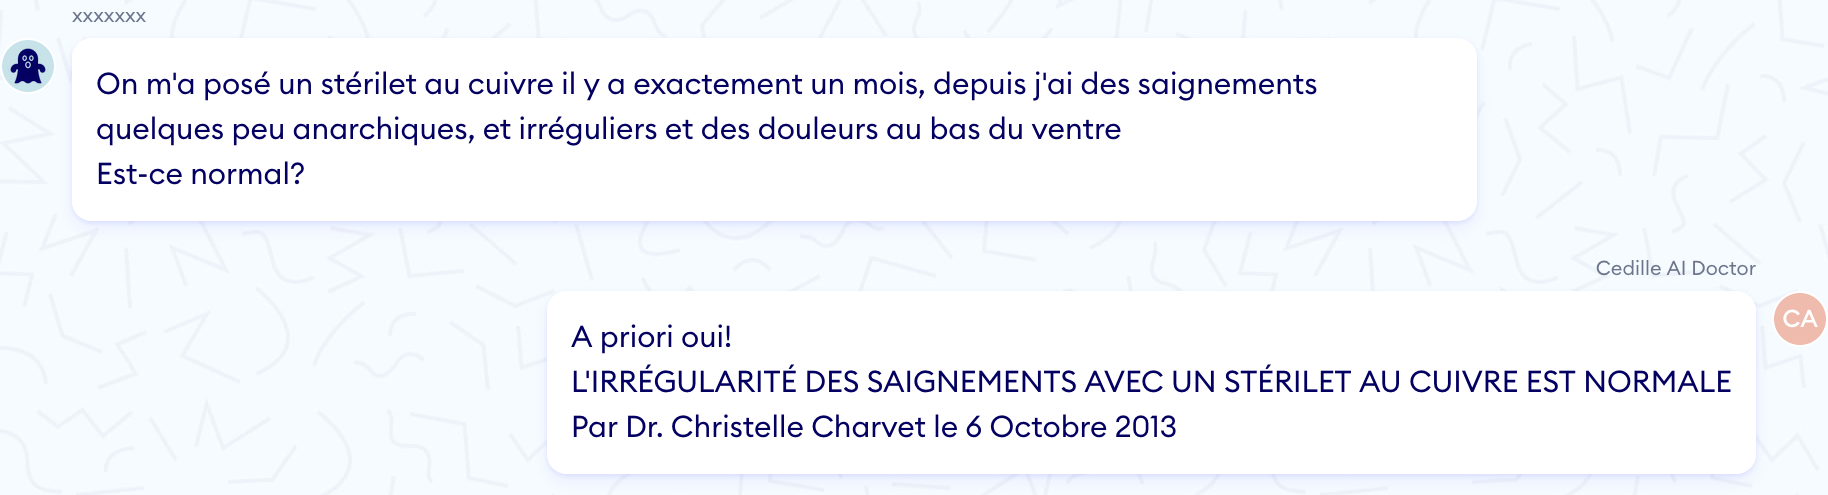 PATIENT: On m'a posé un stérilet au cuivre il y a exactement un mois, depuis j'ai des saignements\ quelques peu anarchiques, et irréguliers et des douleurs au bas du ventre\
Est-ce normal?\
\
DOCTOR: A priori oui!\
L'IRRÉGULARITÉ DES SAIGNEMENTS AVEC UN STÉRILET AU CUIVRE EST NORMALE\
Par Dr. Christelle Charvet le 6 Octobre 2013